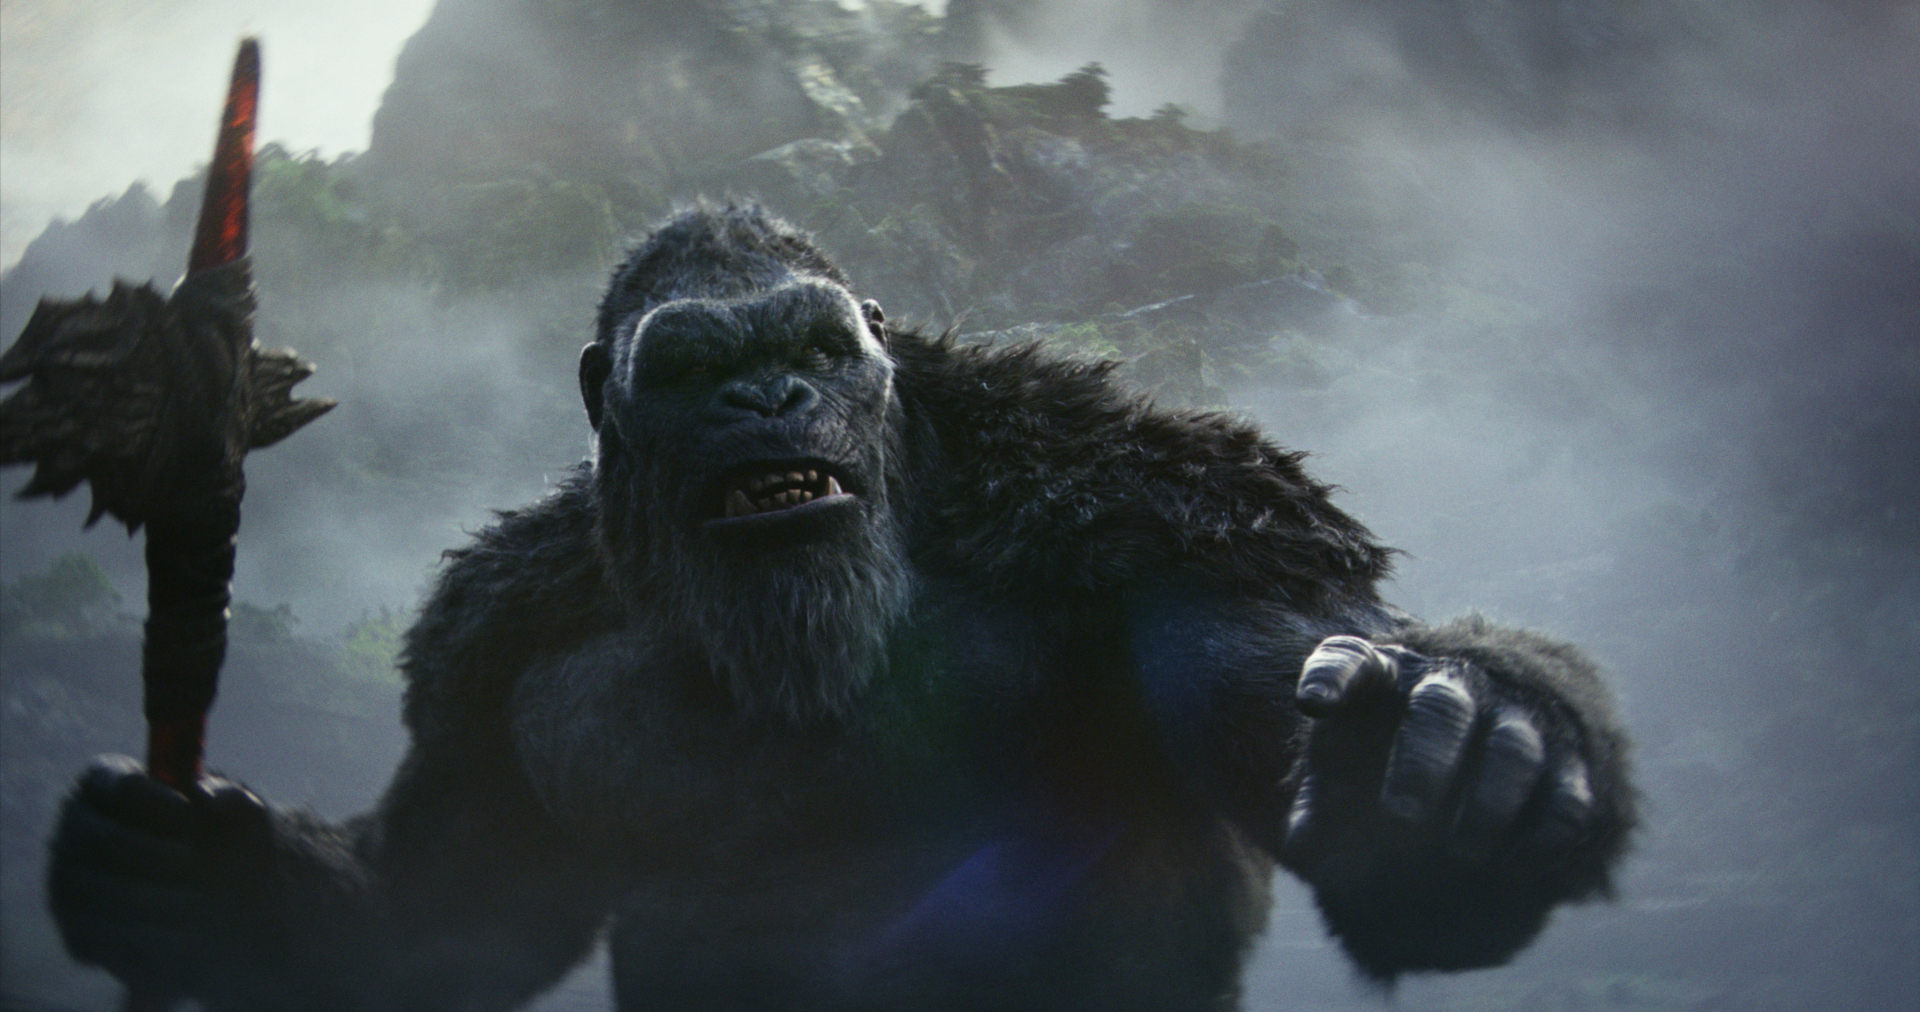 Godzilla x Kong: Đế Chế Mới - Gặp gỡ các nhân vật chính trong phần phim mới về hai titan vĩ đại bậc nhất - ảnh 2